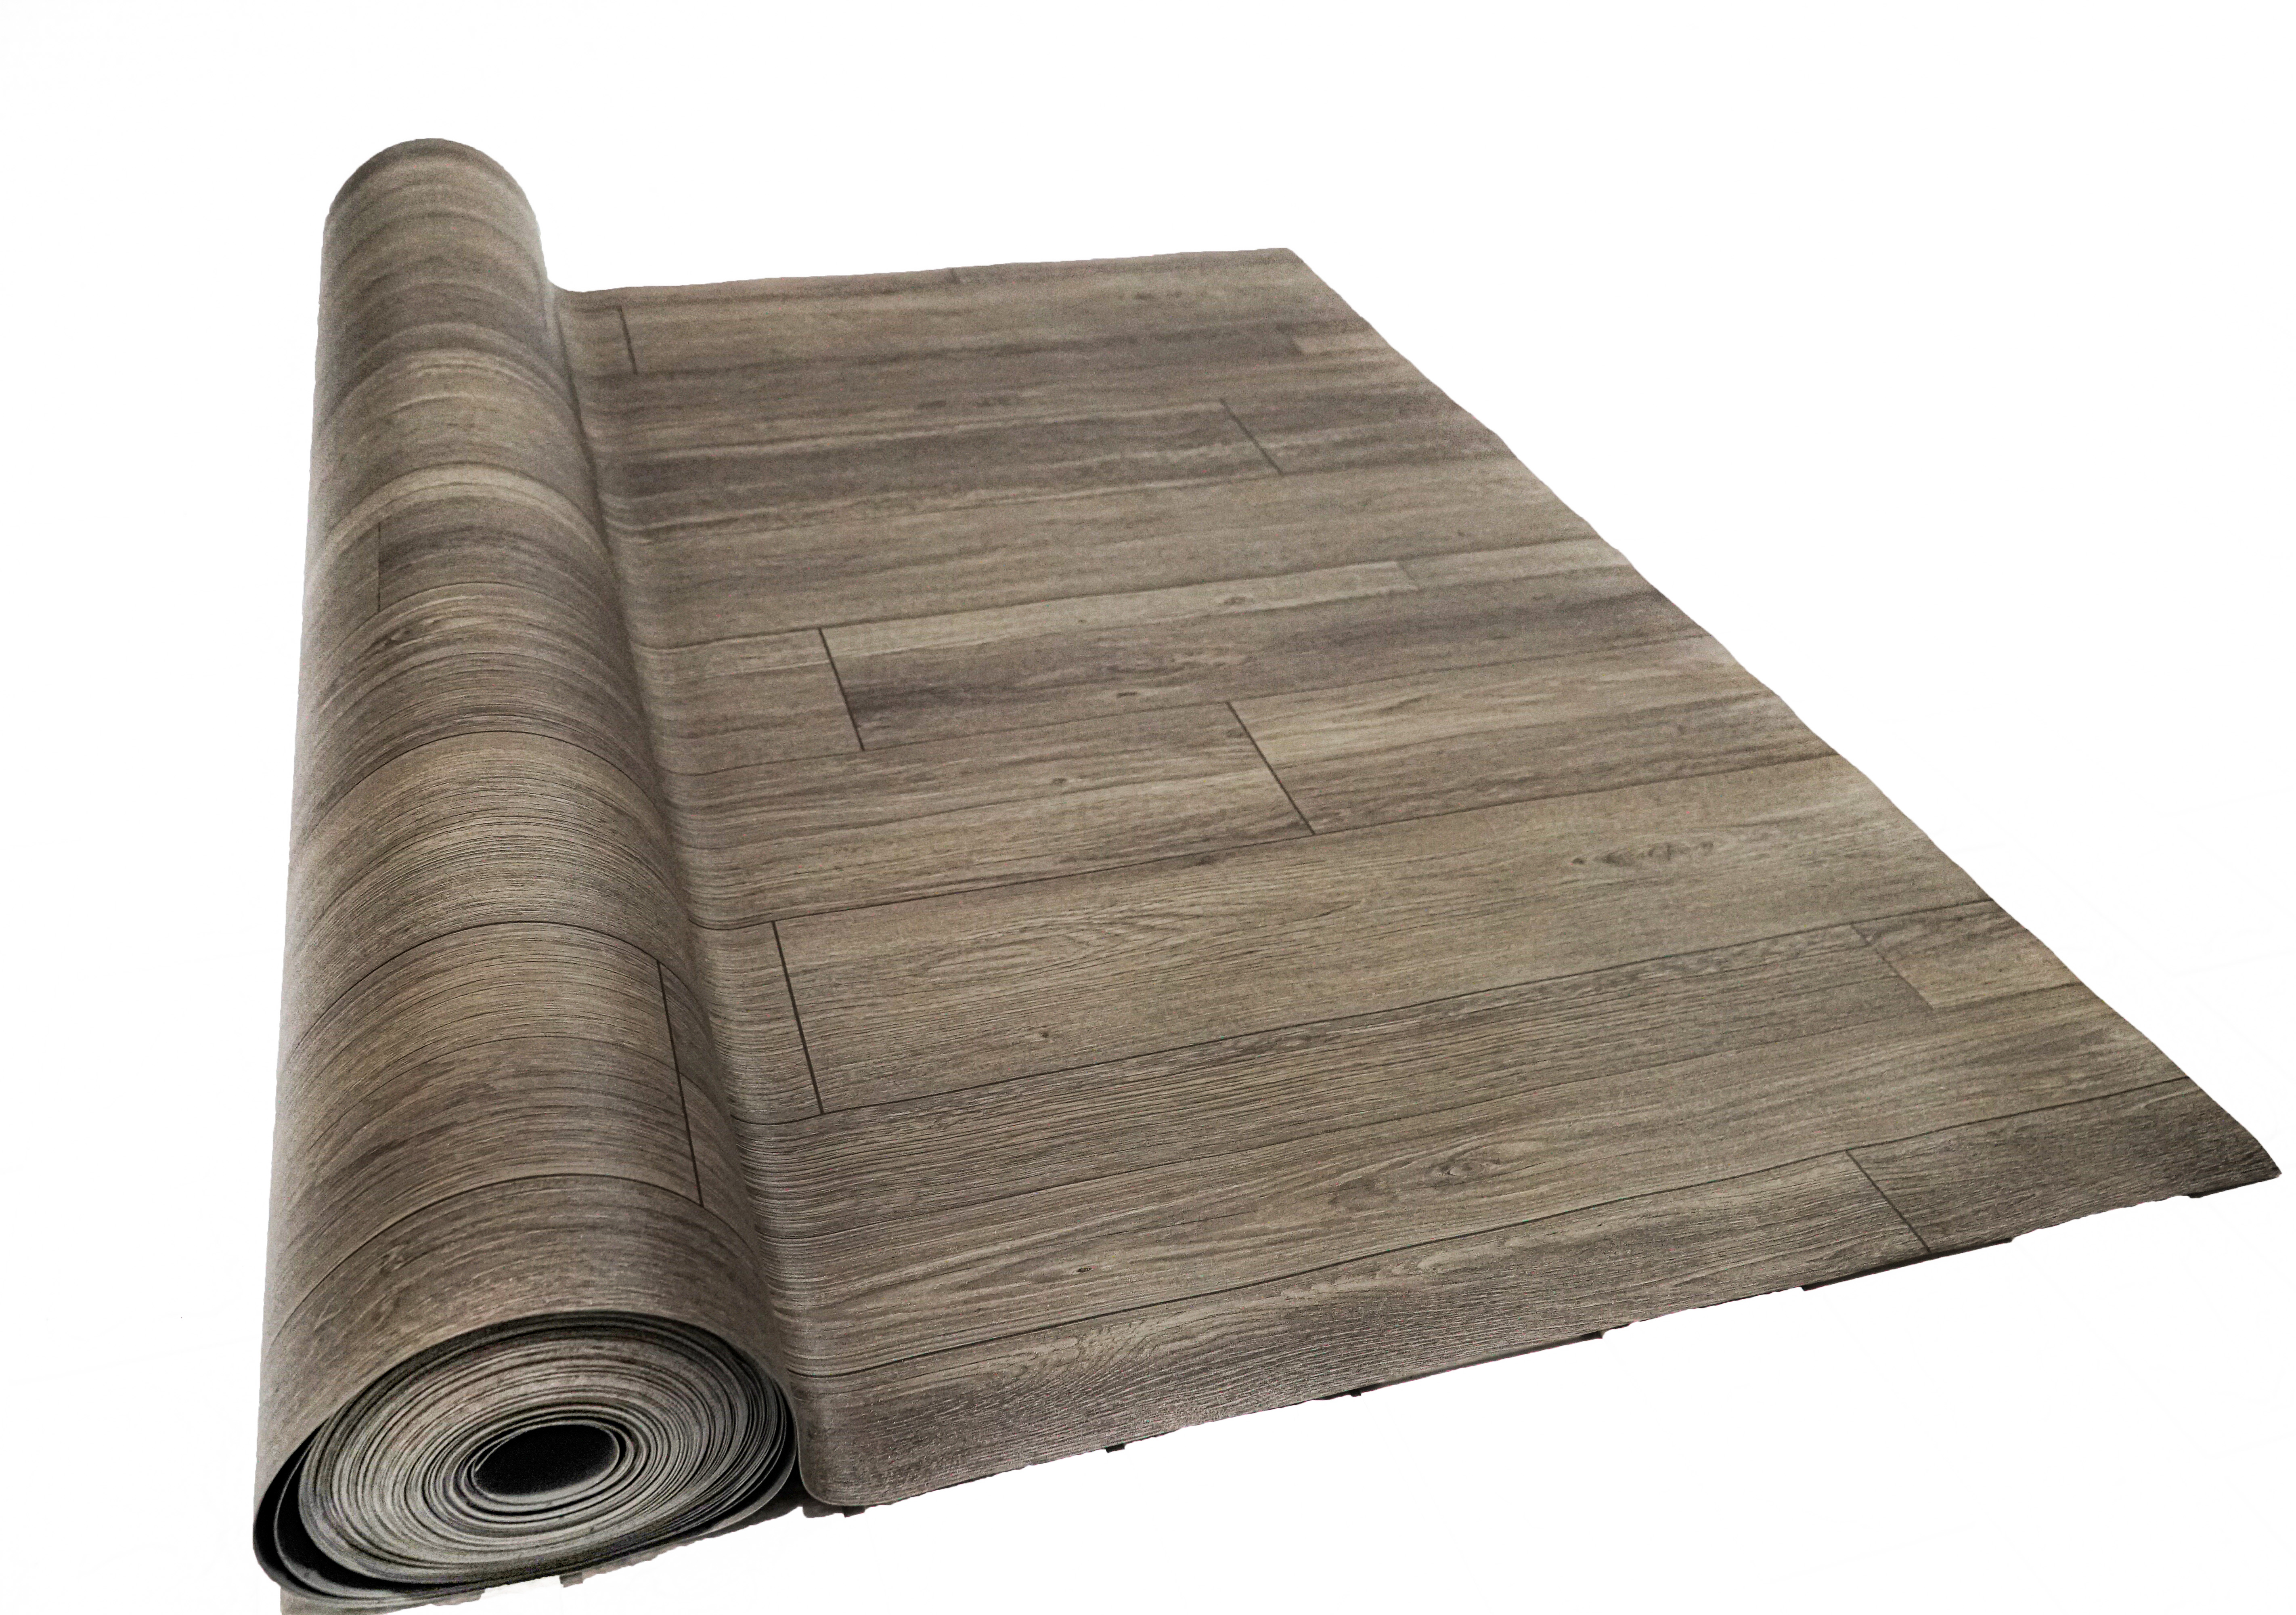 Thảm nhựa simili trải sàn vân gỗ màu xám siêu bền, chống tuyệt đối nước